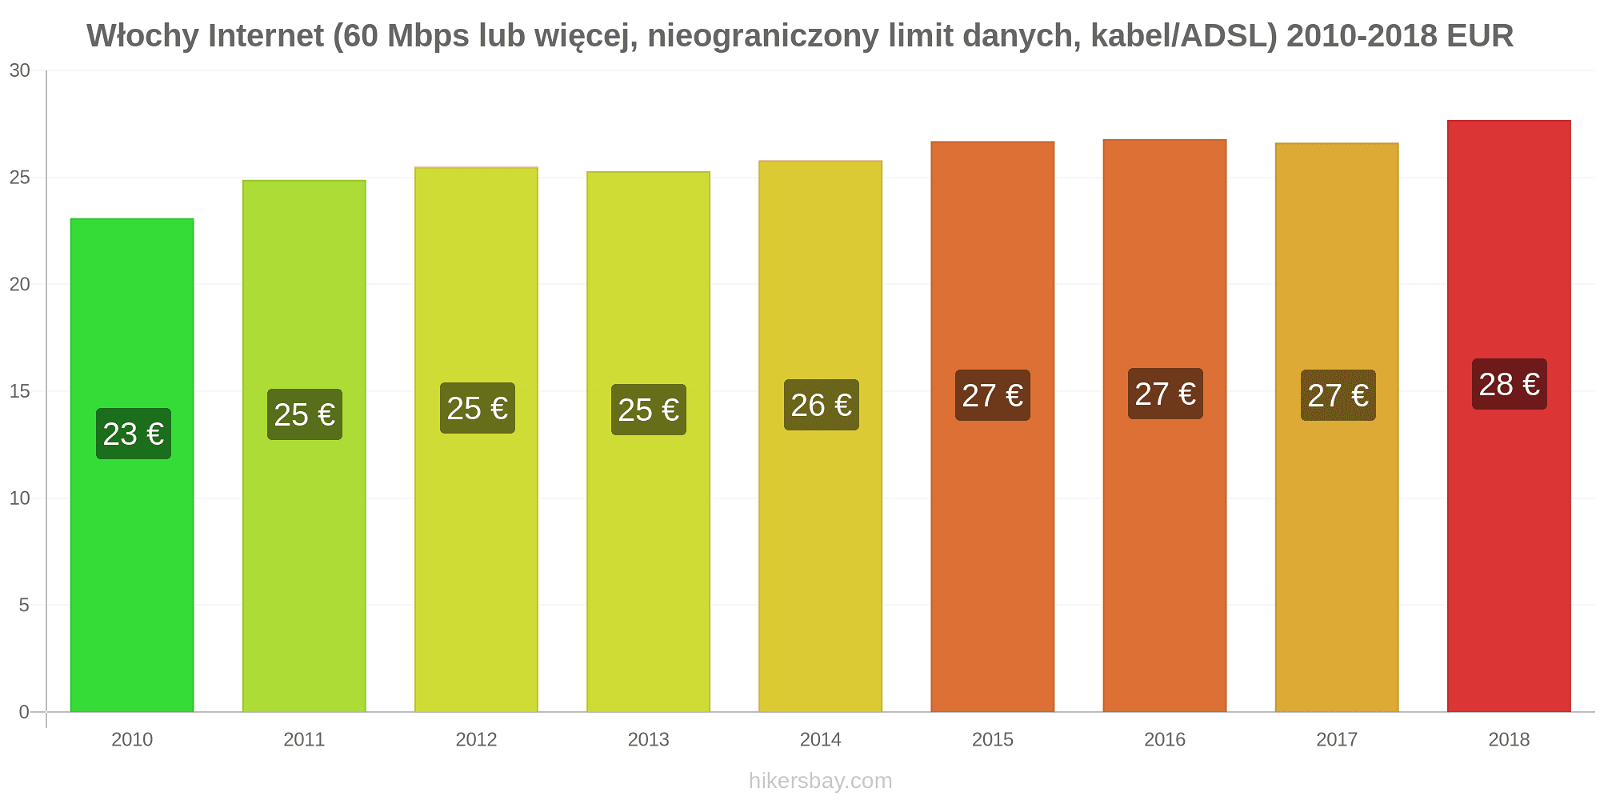 Włochy zmiany cen Internet (60 Mbps lub więcej, nieograniczony limit danych, kabel/ADSL) hikersbay.com